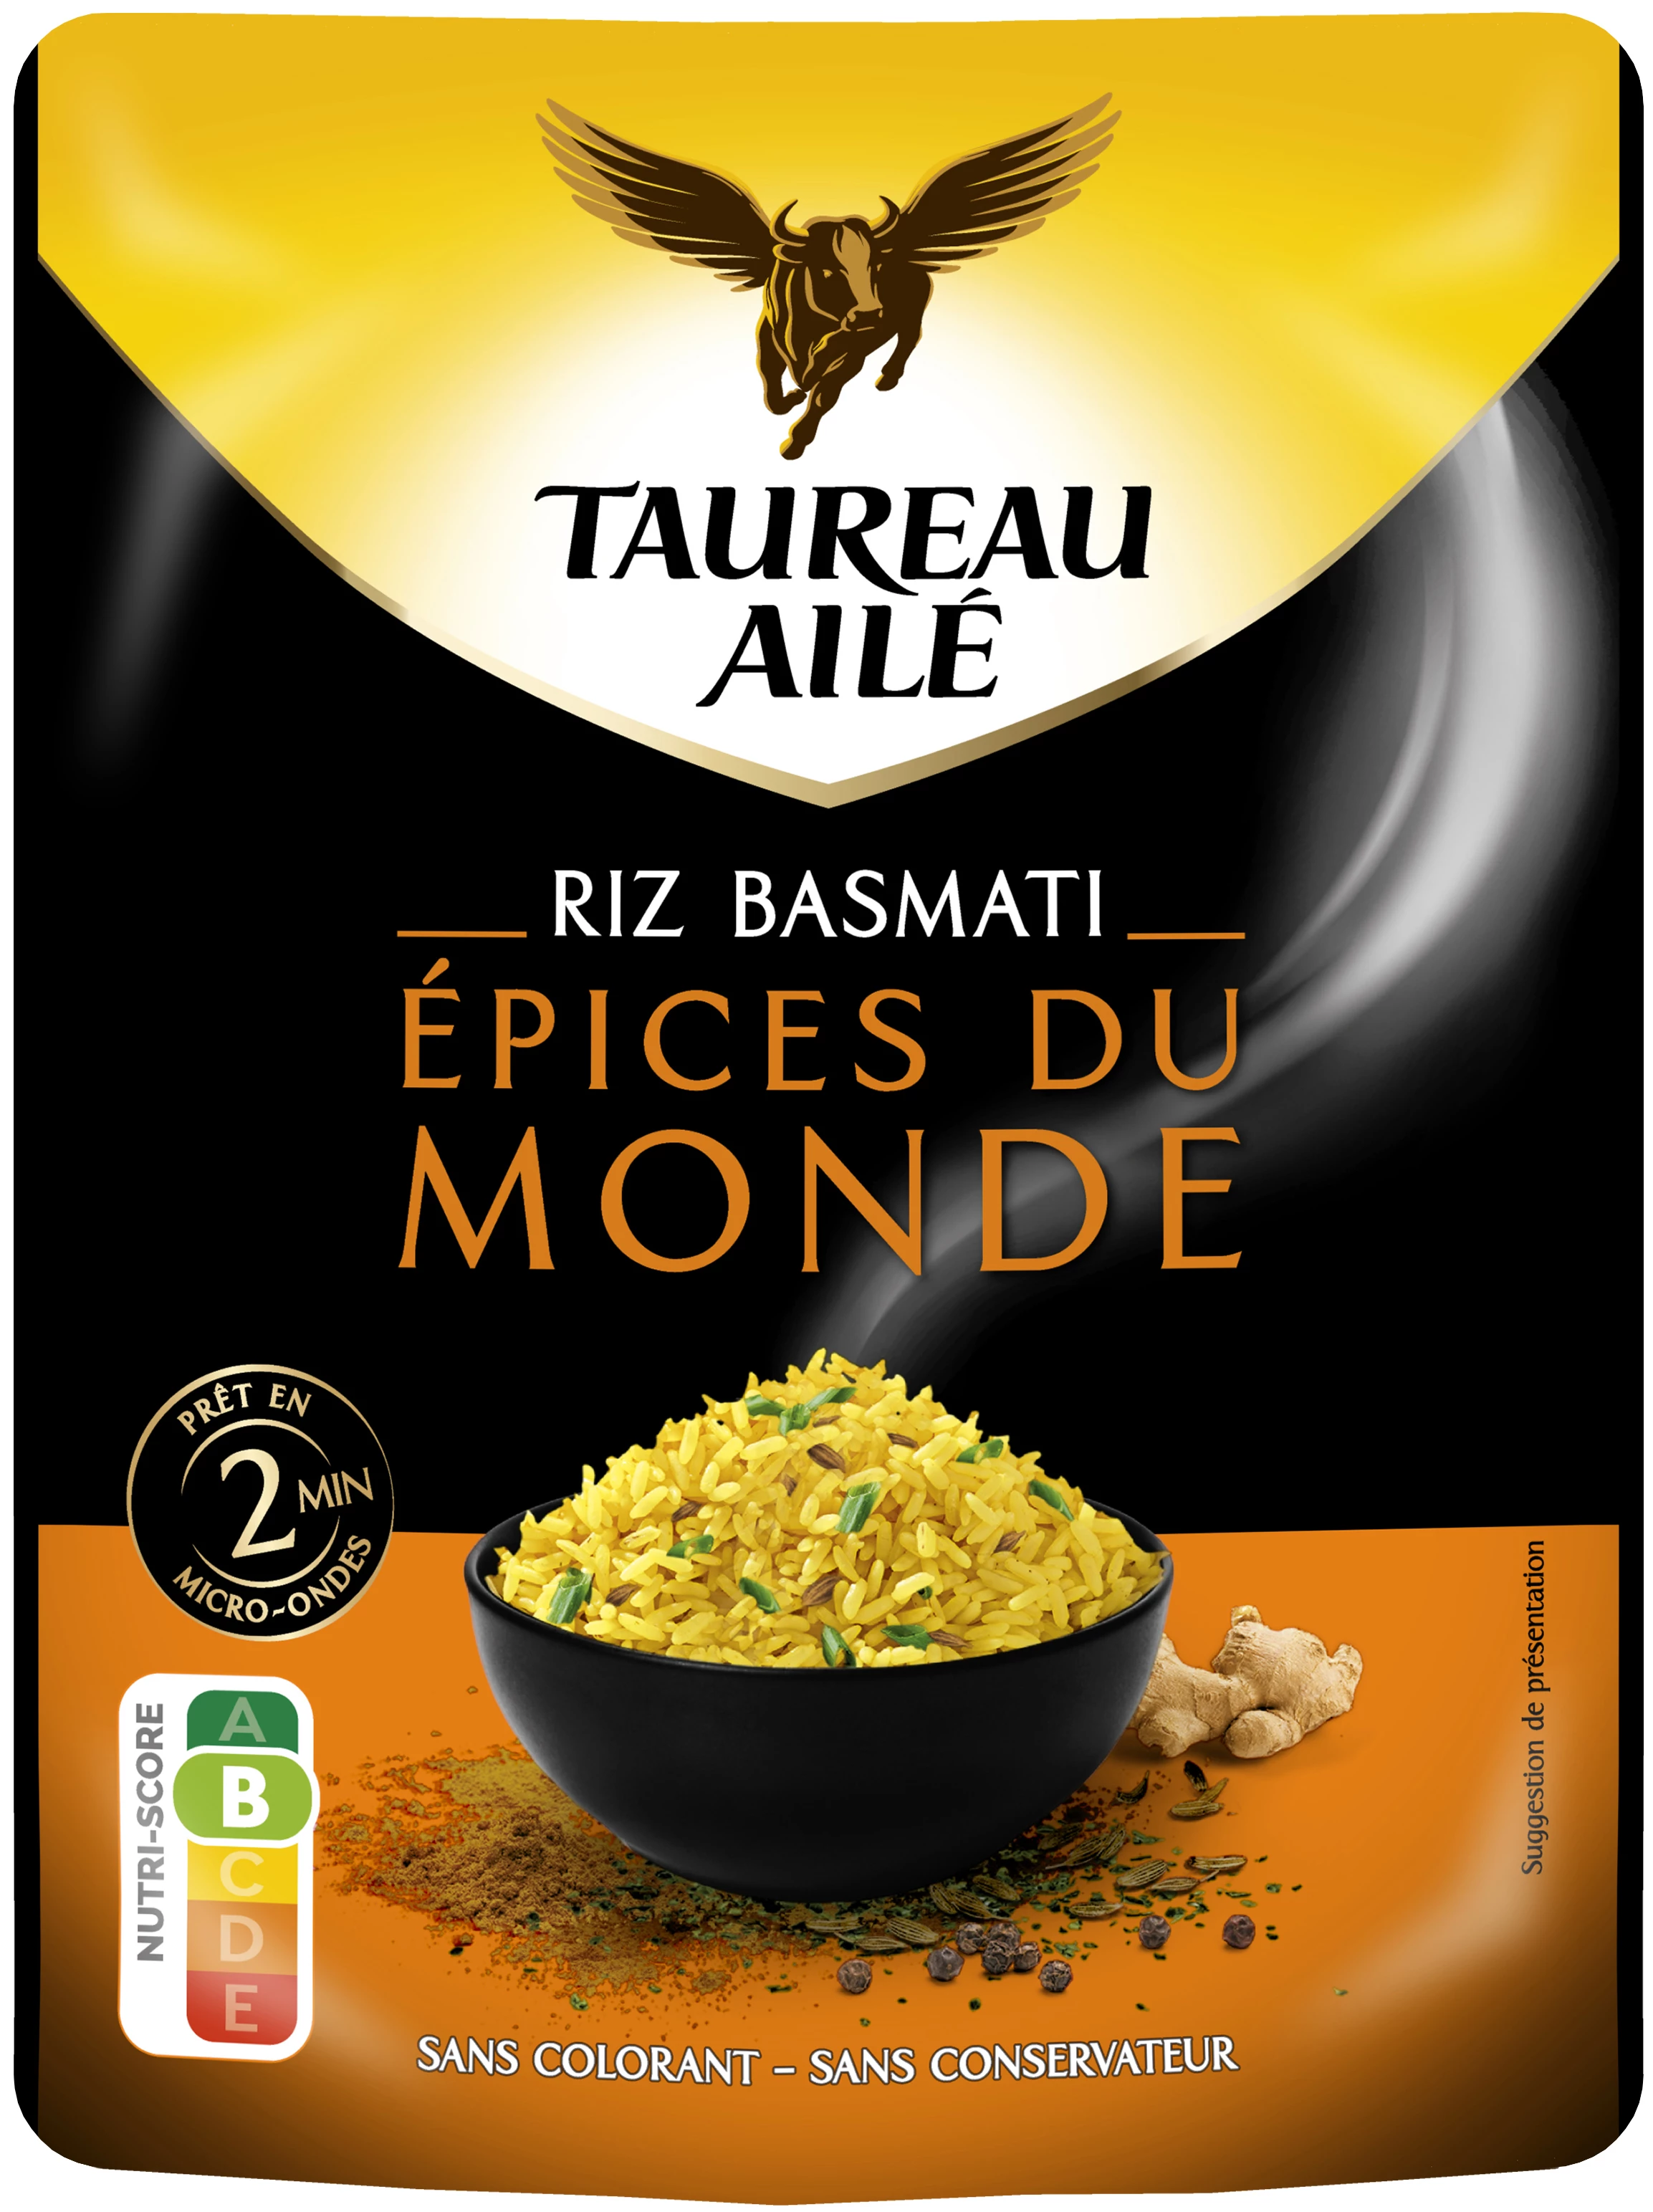 World Basmati Rice, 250g - TAUREAU AILÉ